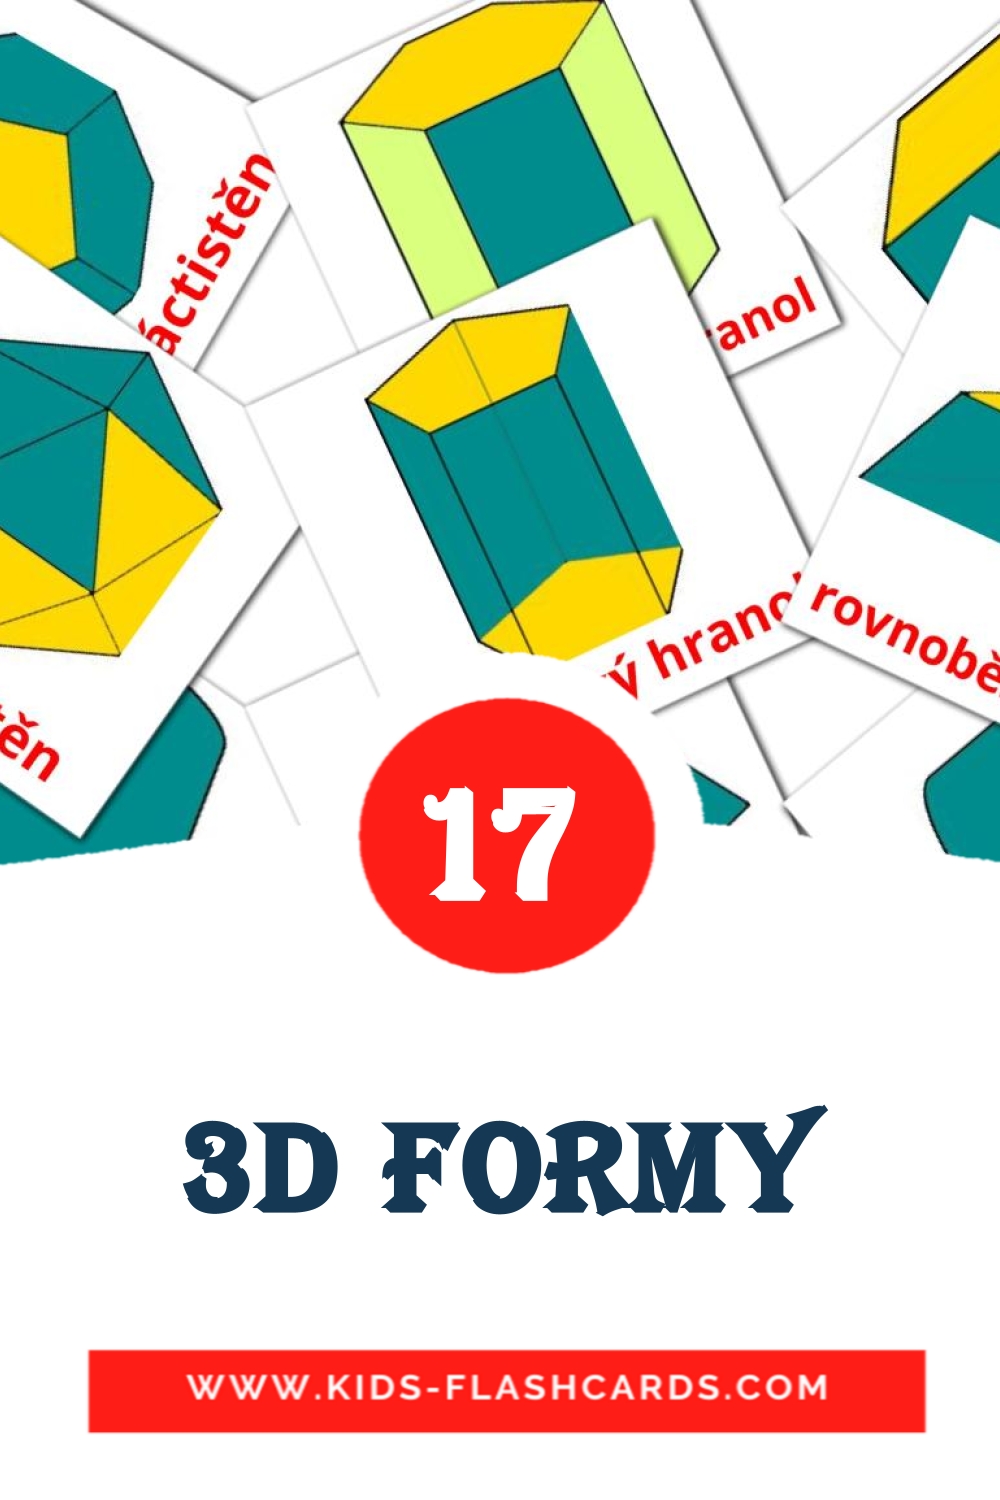 17 3D formy Bildkarten für den Kindergarten auf Tschechisch